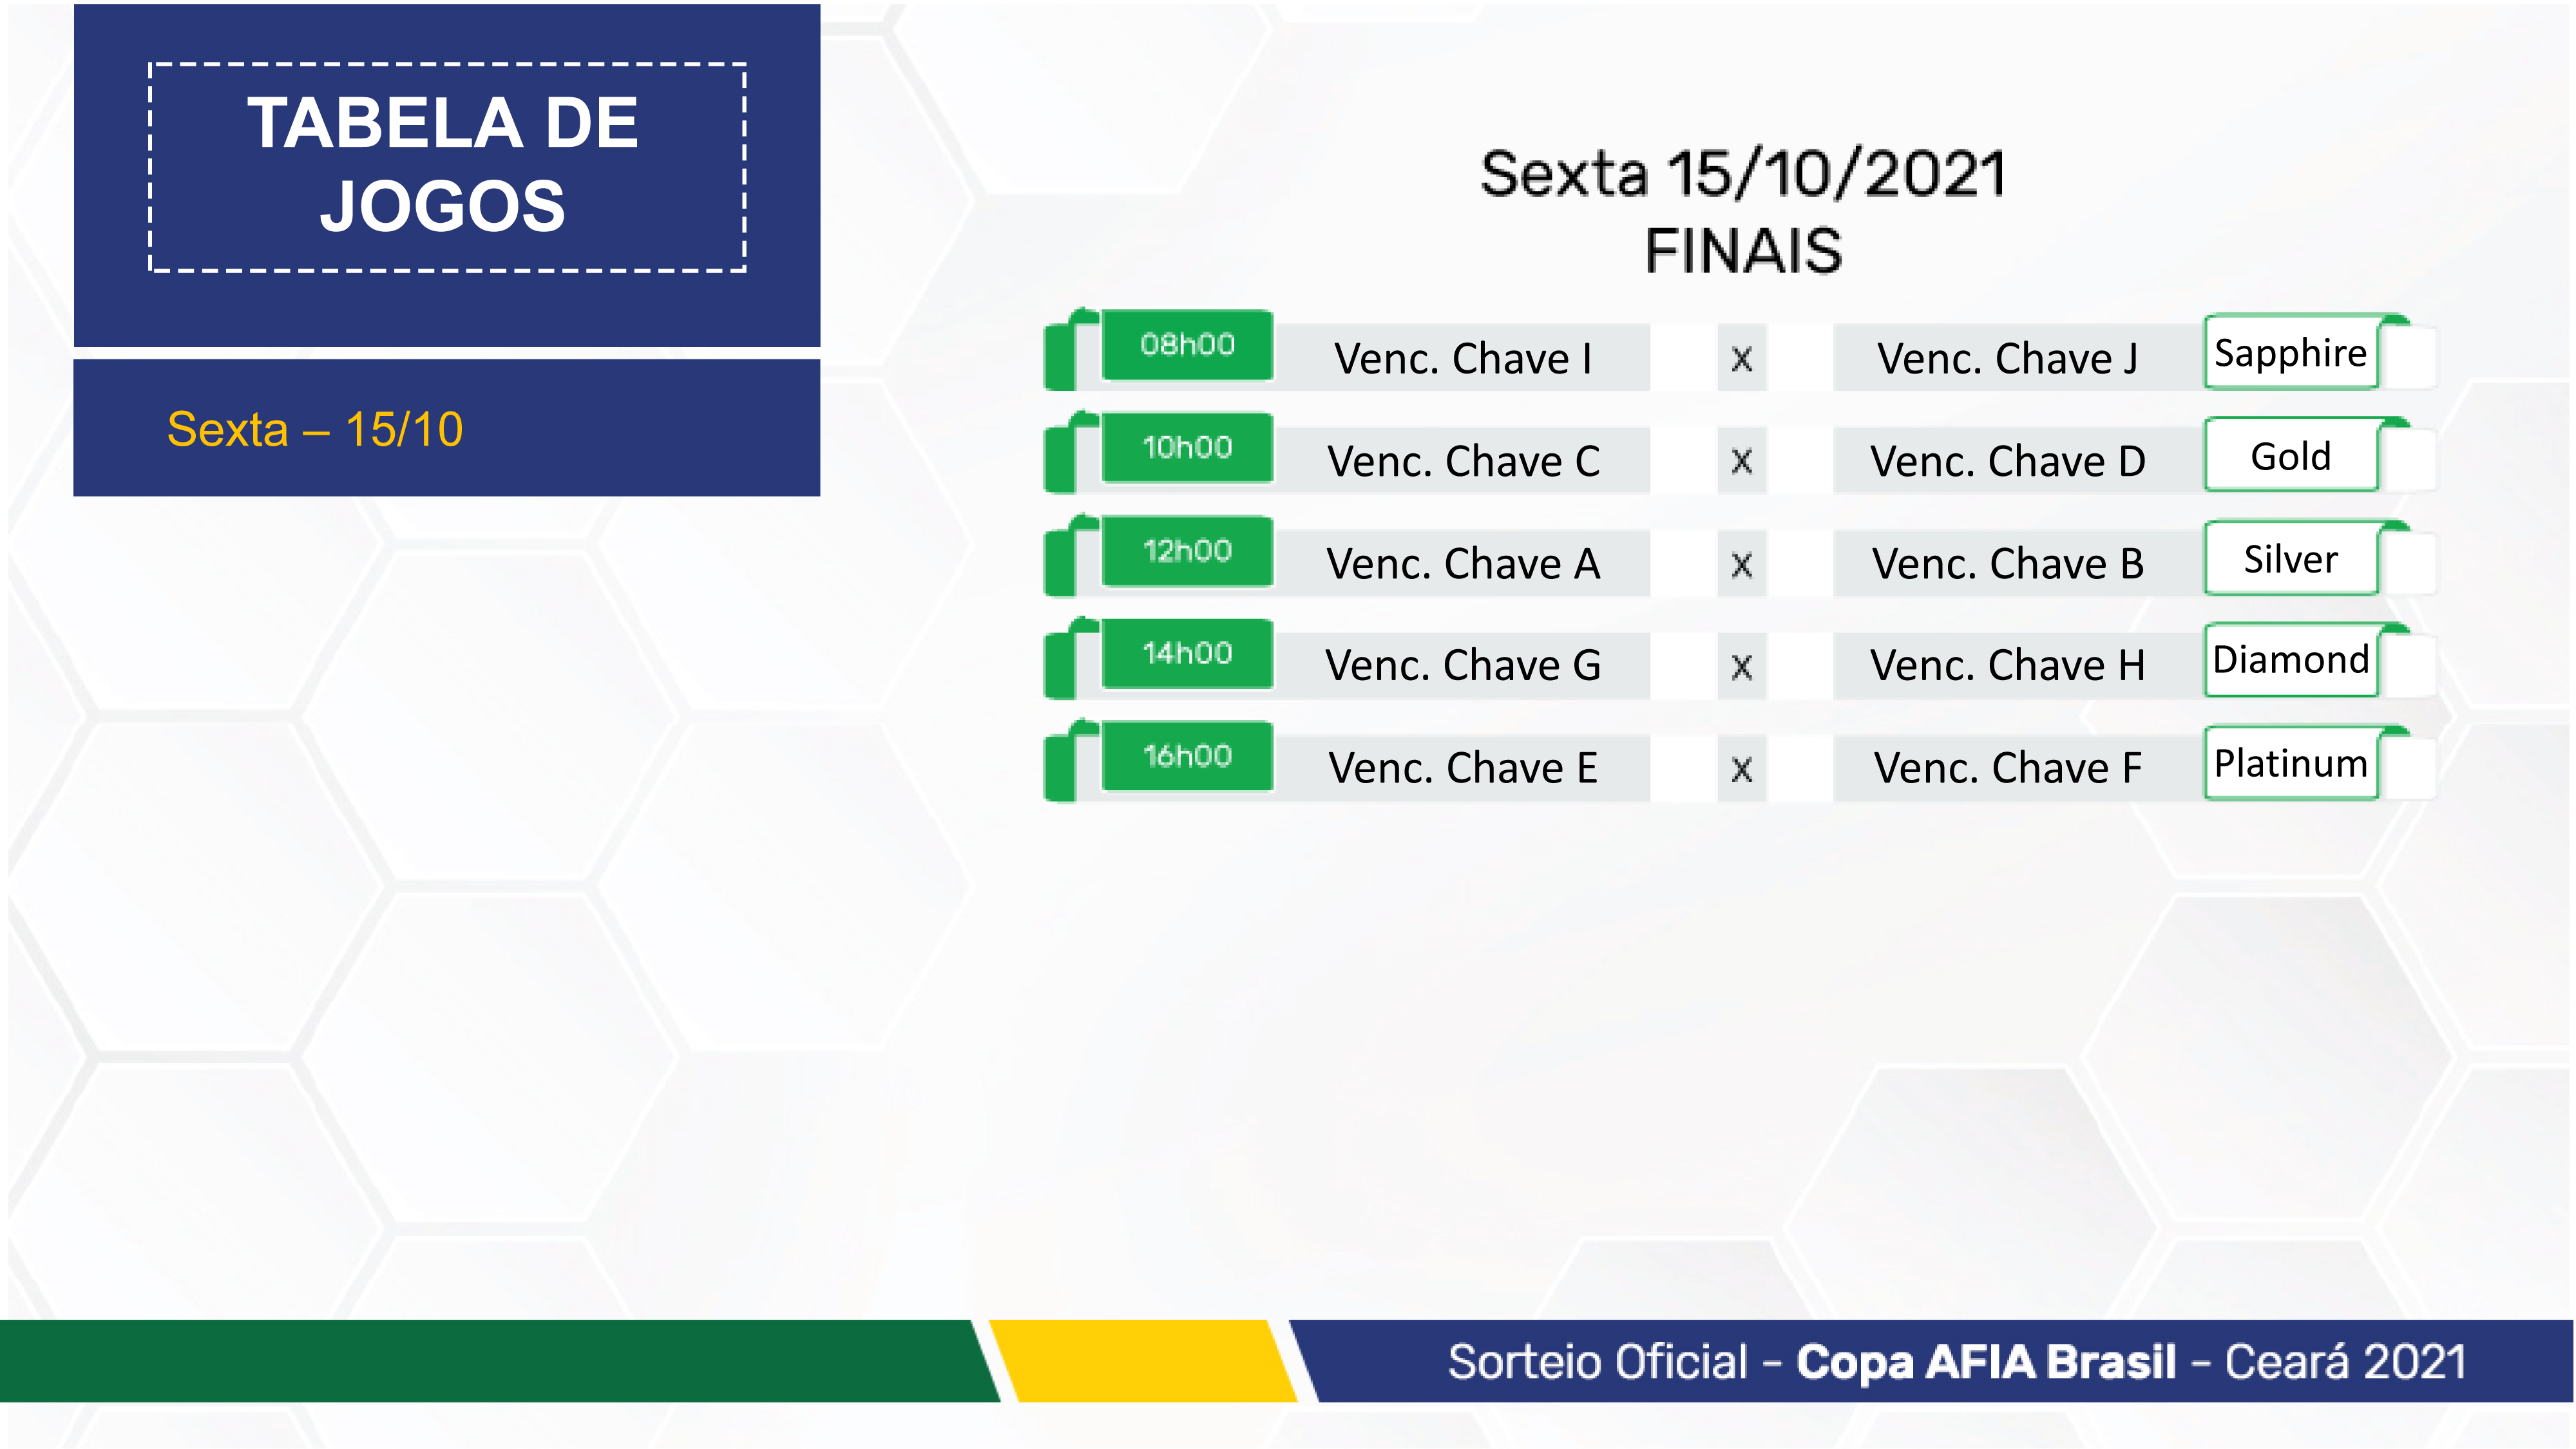 Copa AFIA Ceará BRA 21 - INFO